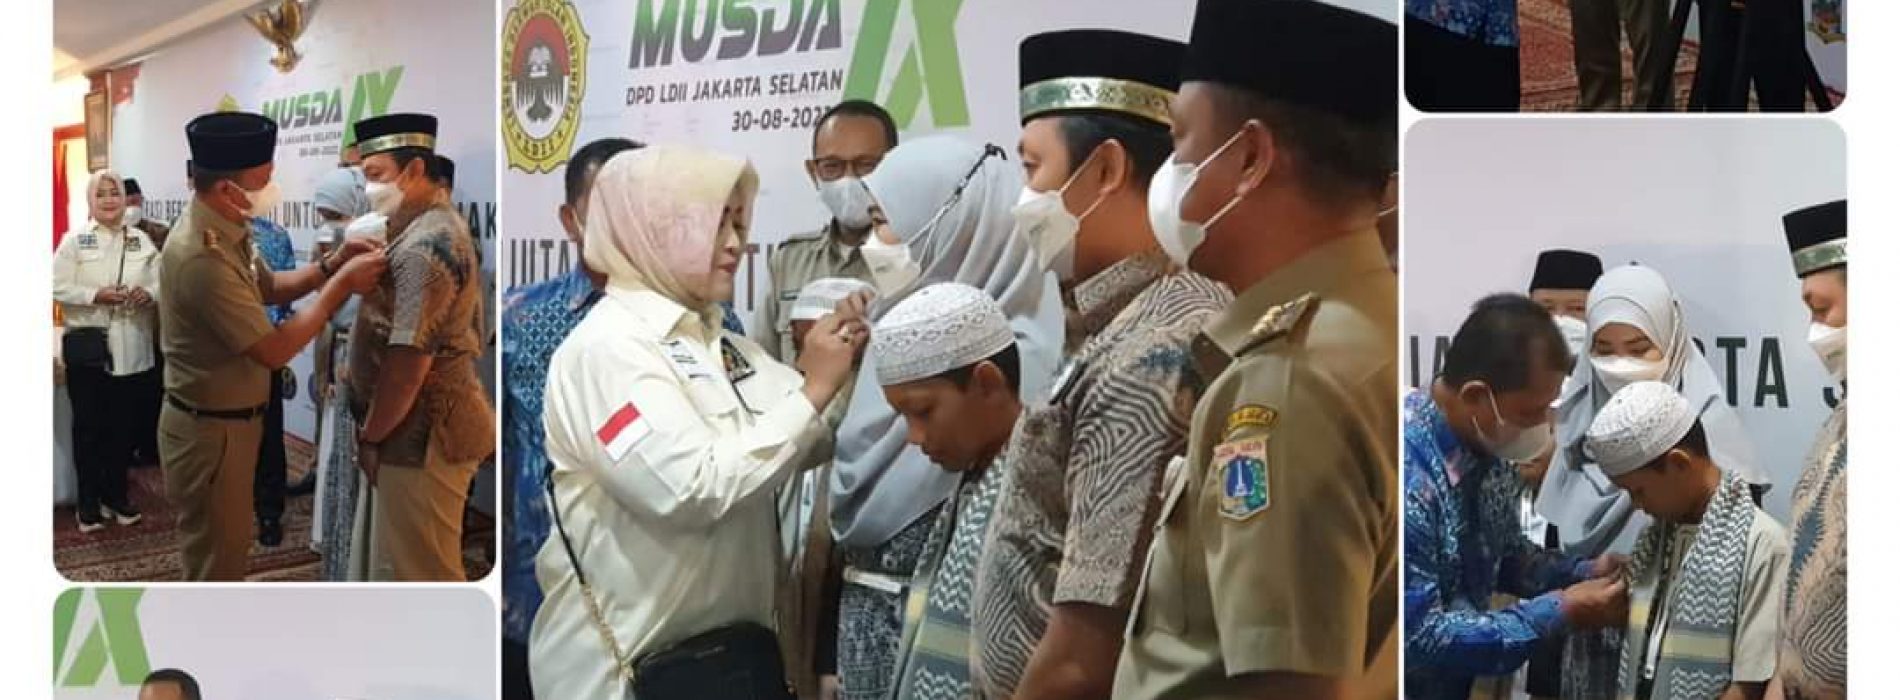 Fahira Idris Anggota DPD RI Dapil Provinsi DKI Jakarta hadir dalam MUSDA IX DPD LDII Kota Jakarta Selatan.